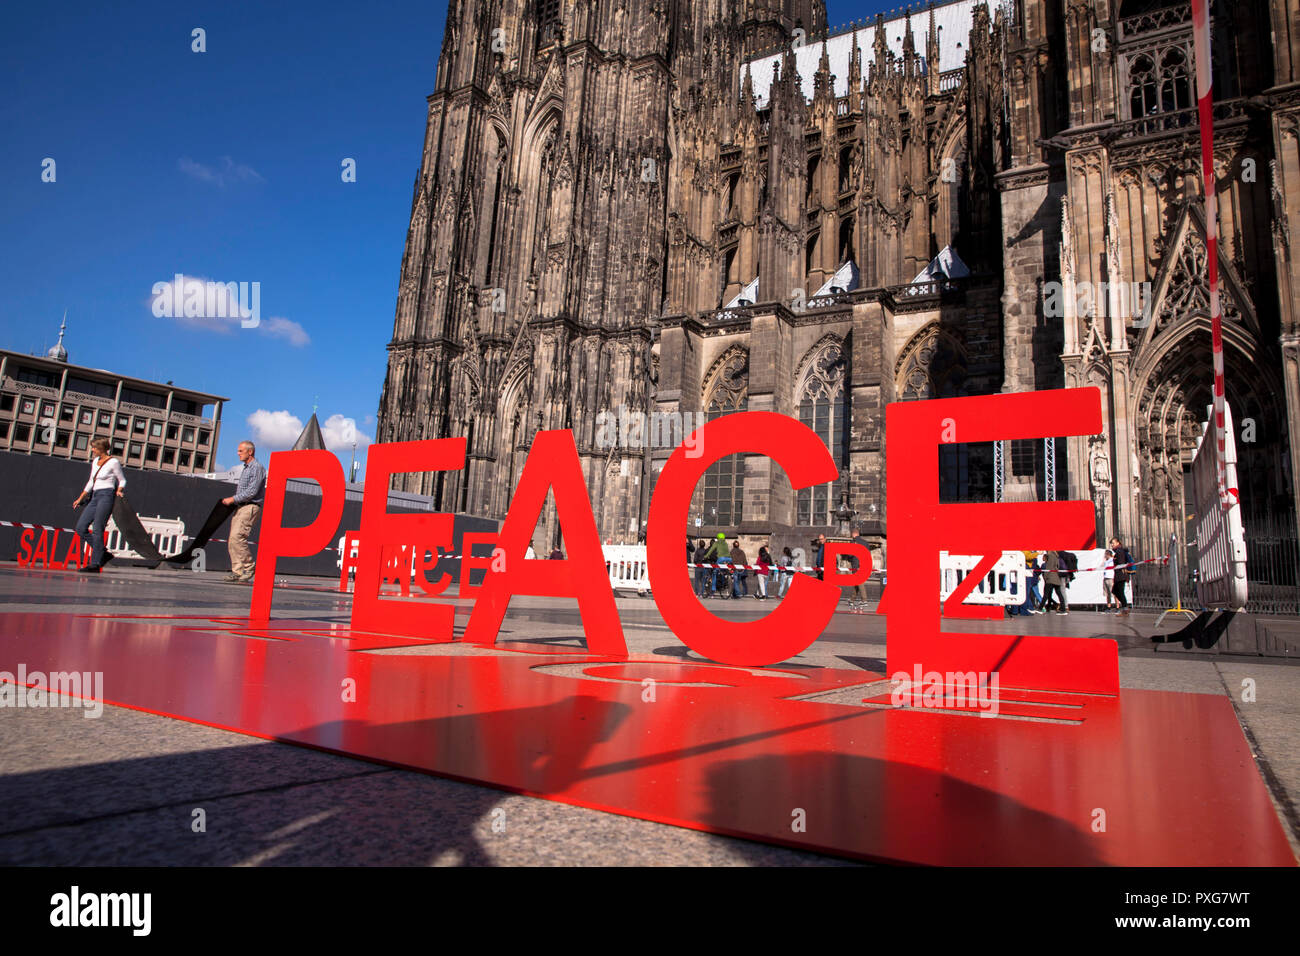 Mot sculptures en face de la cathédrale La cathédrale au cours de 2018, le pèlerinage sculptures montrent le mot paix en 12 langues, Cologne, Allemagne. Banque D'Images